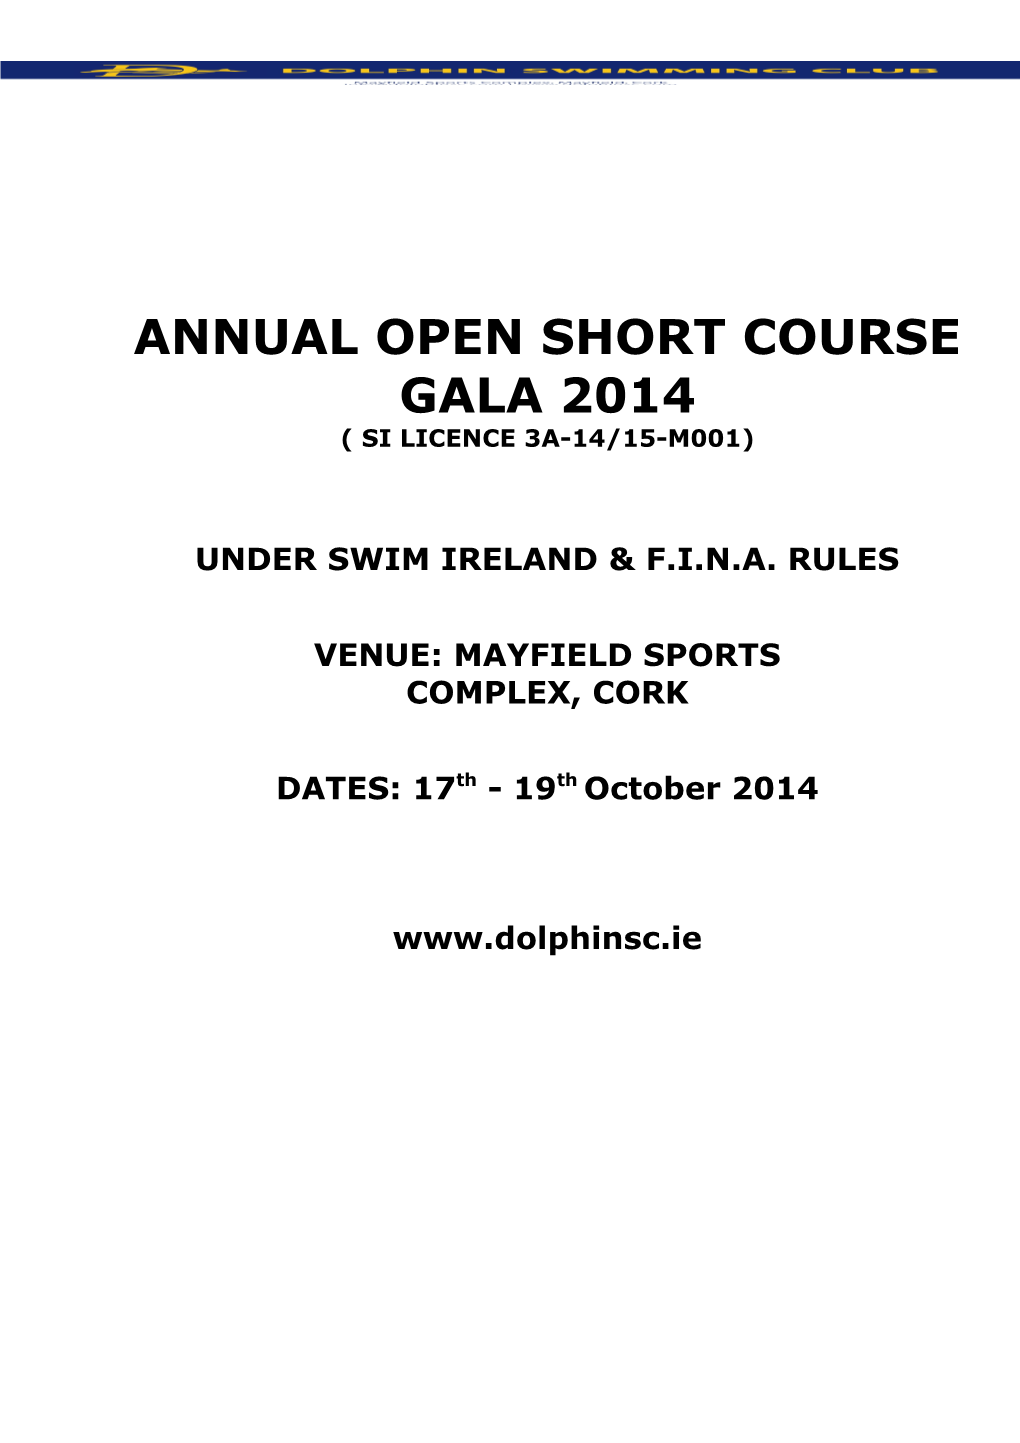 Annual Open Short Course Gala 2014